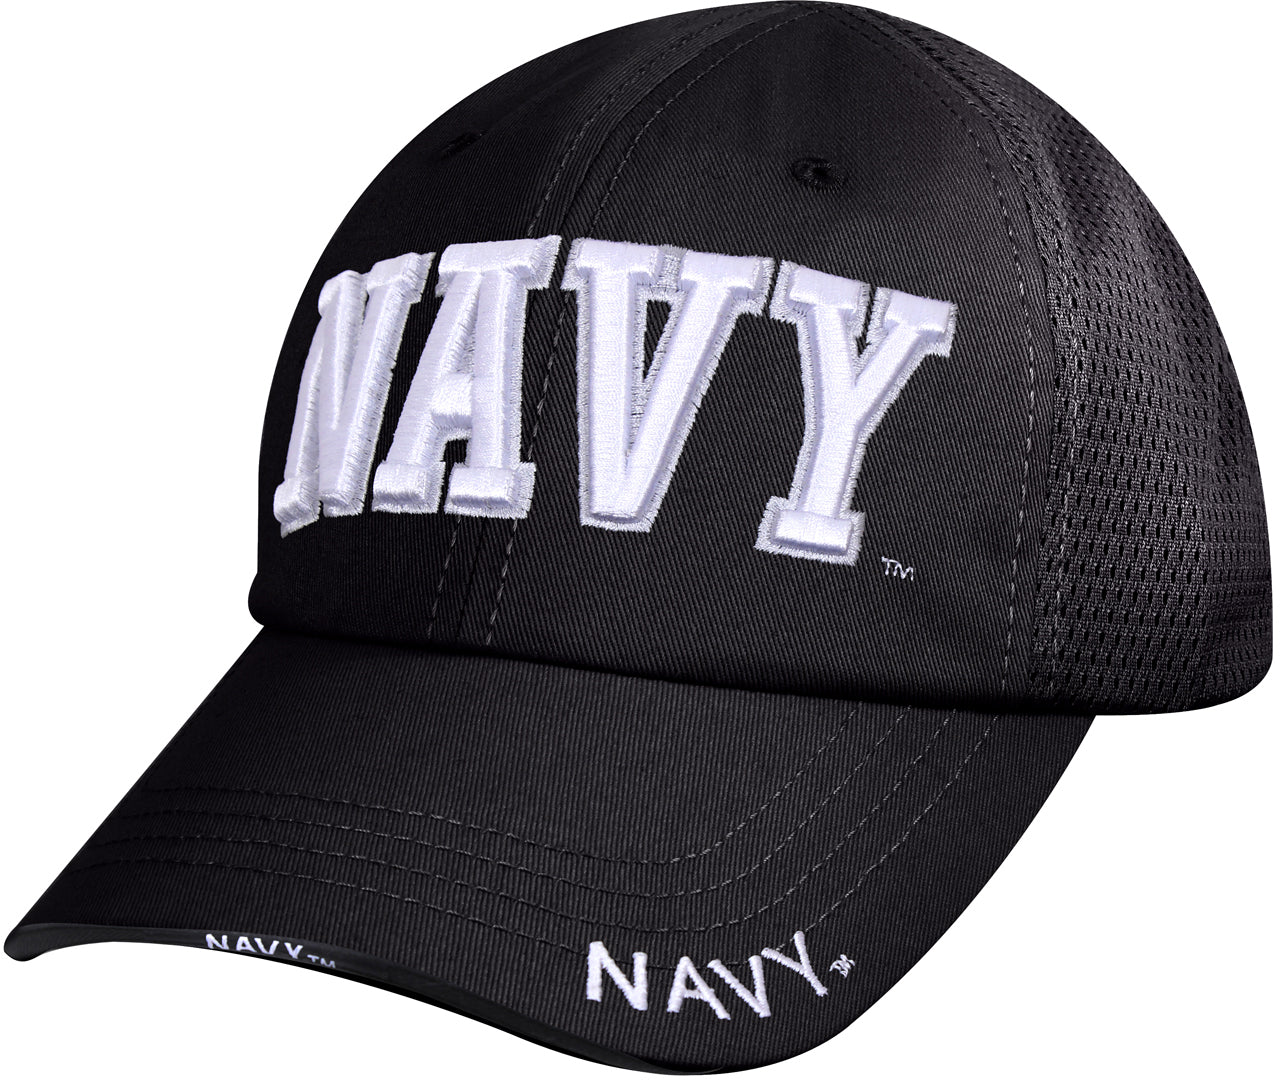 Black - Navy Mesh Back Tactical Cap